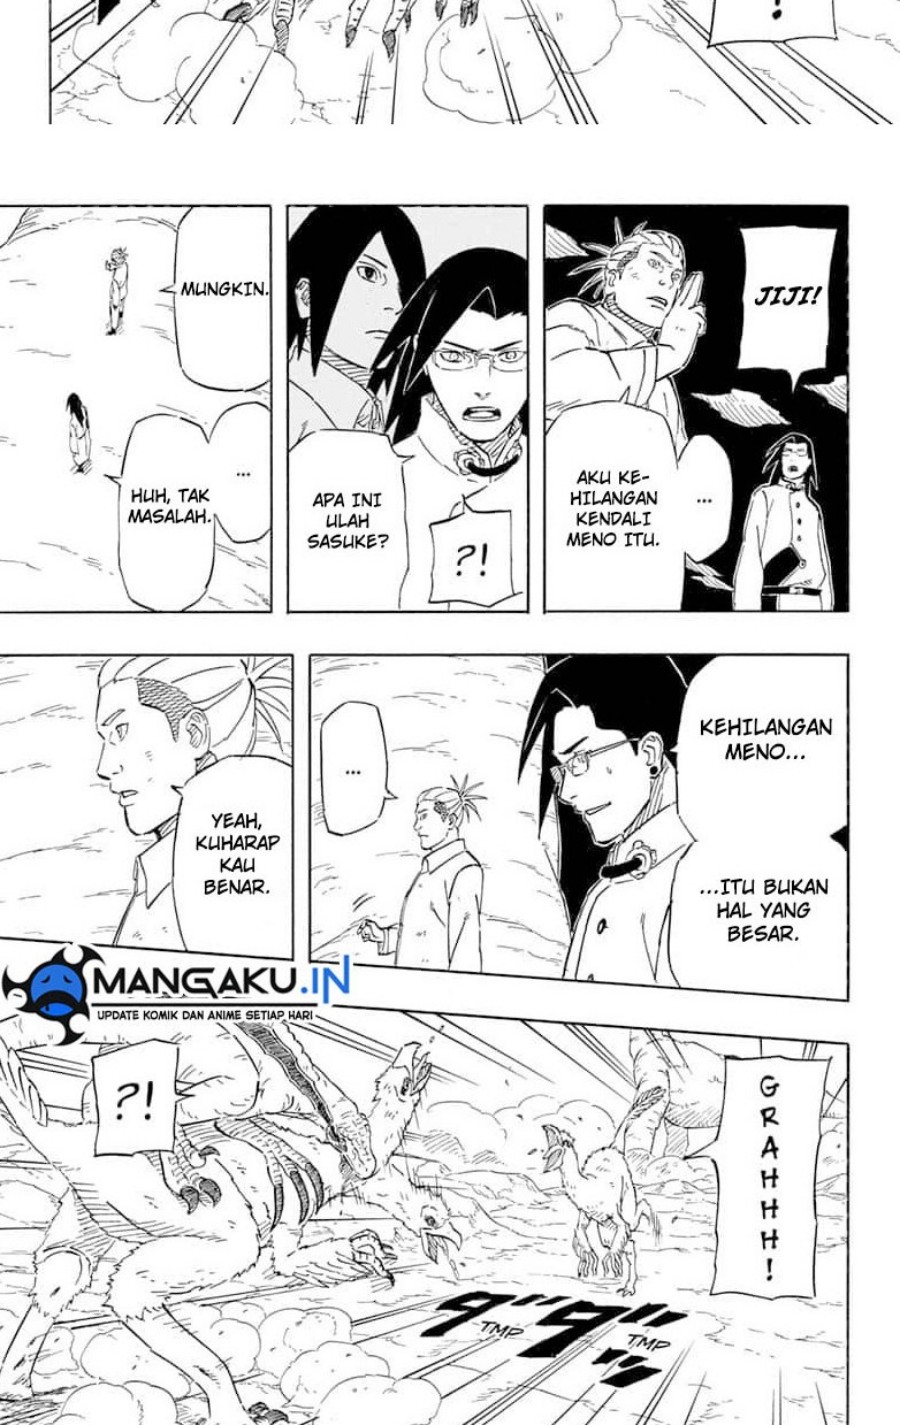 Naruto Sasuke’s Story The Uchiha And The Heavenly Stardust Chapter 08.1